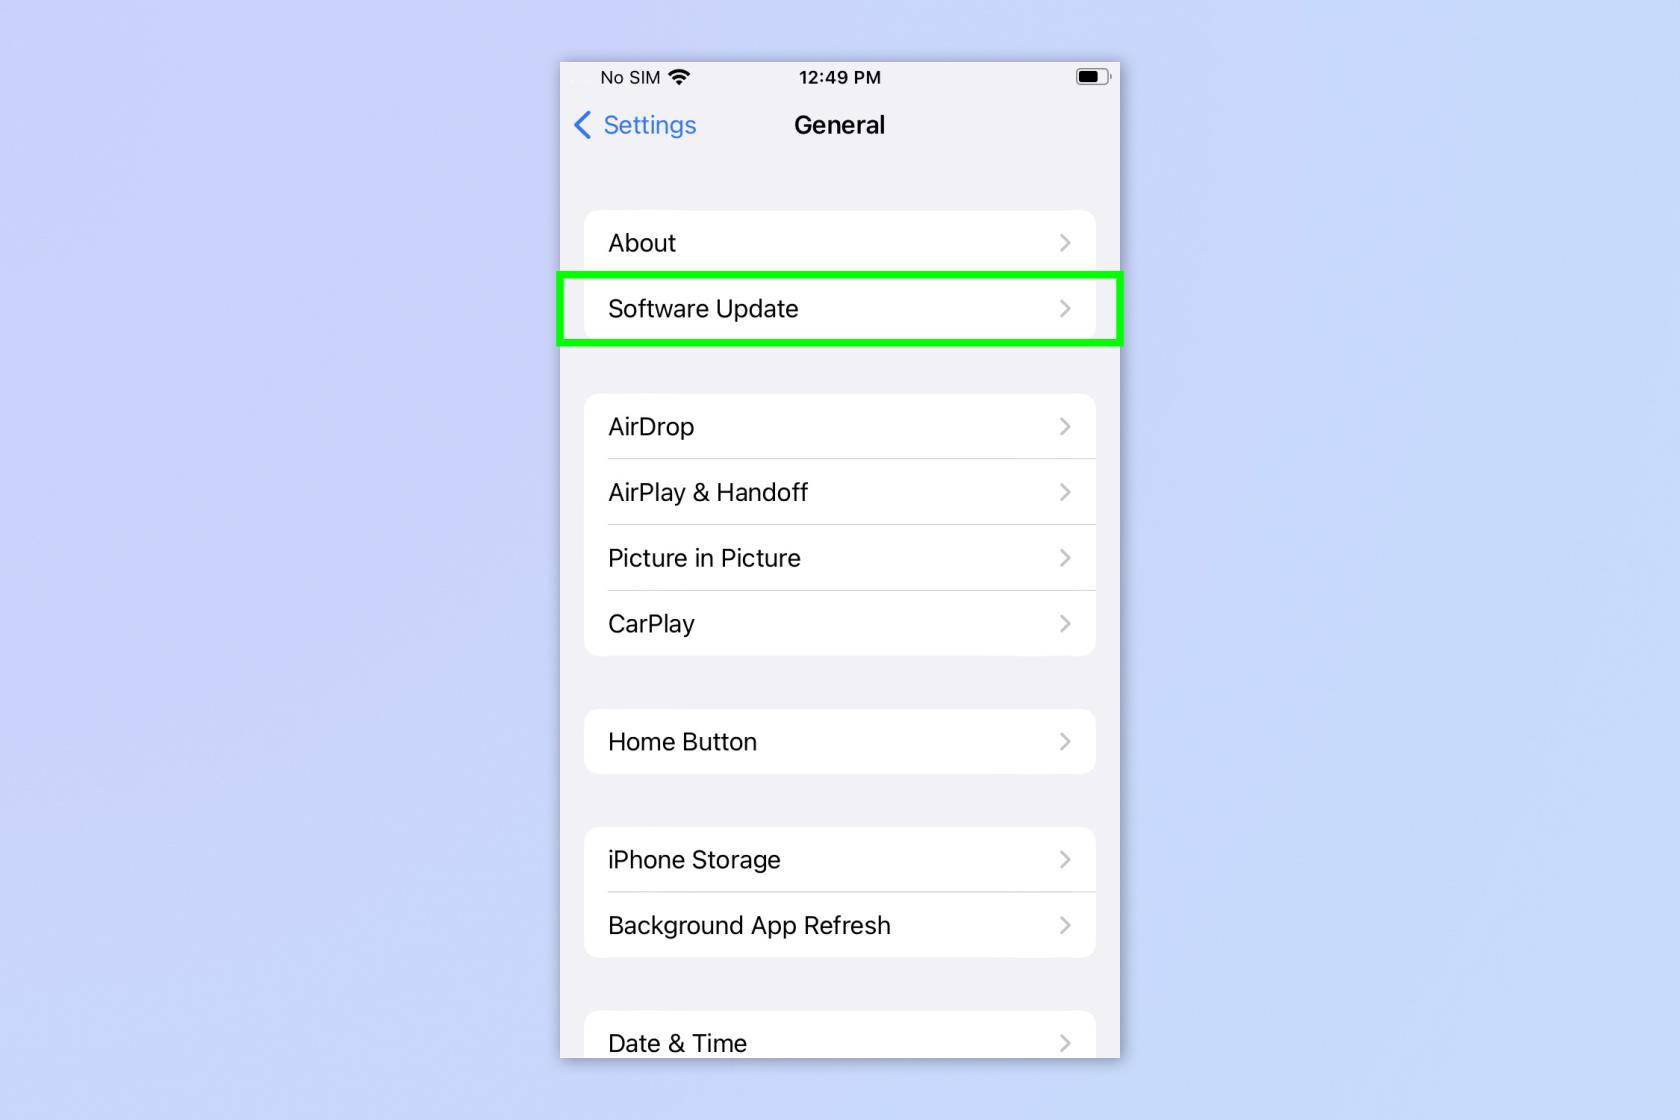 Este recurso do iOS 16.4 torna as atualizações beta muito mais fáceis - veja como